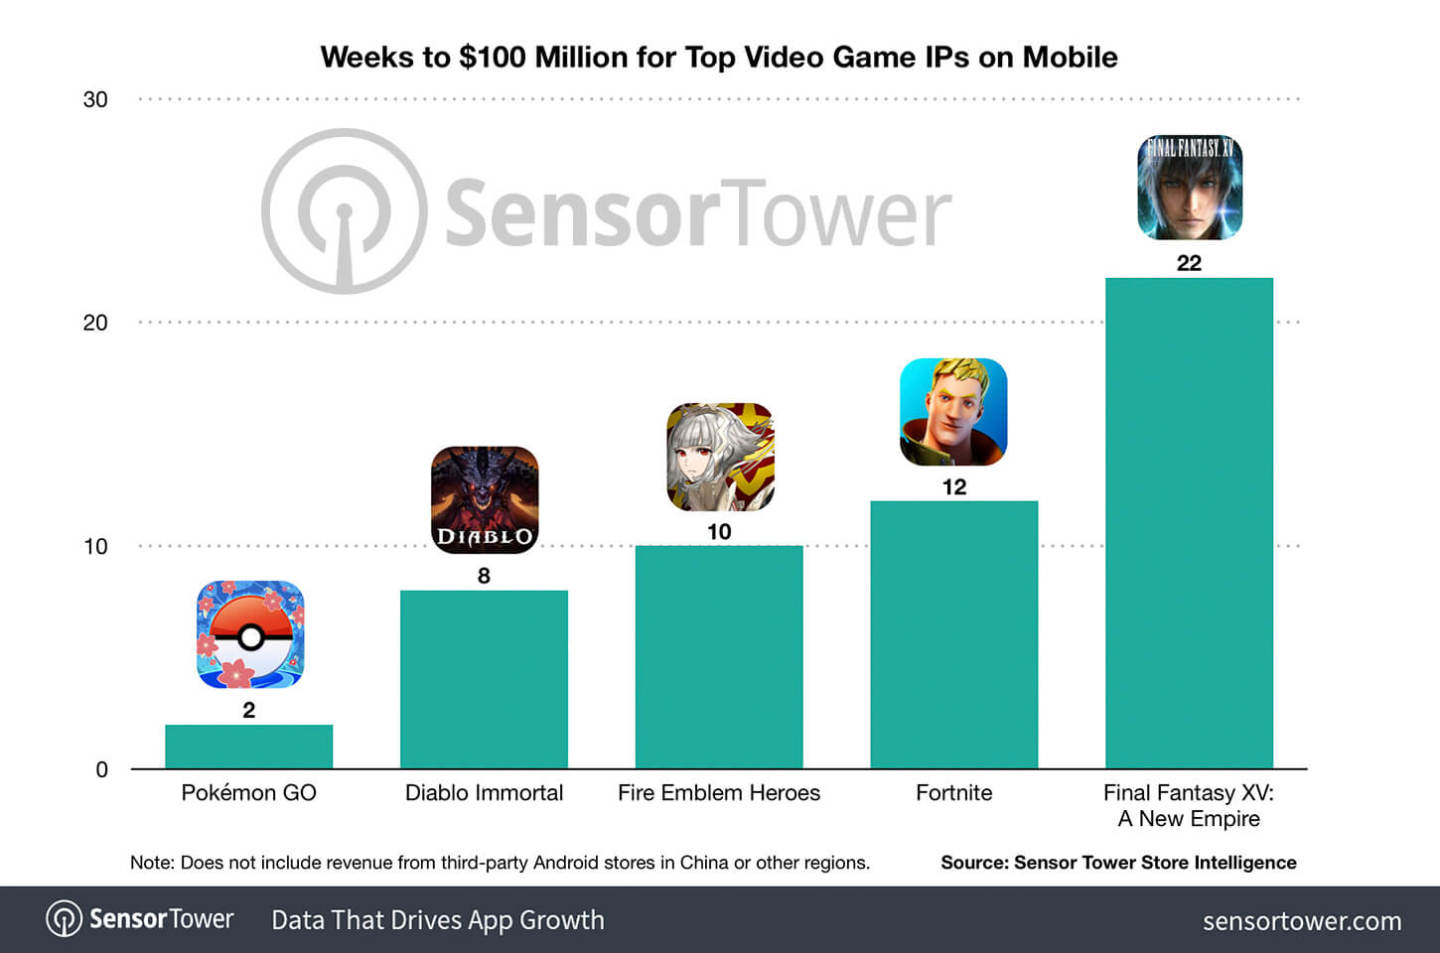 top-video-game-ips-weeks-to-100-million-revenue.jpg